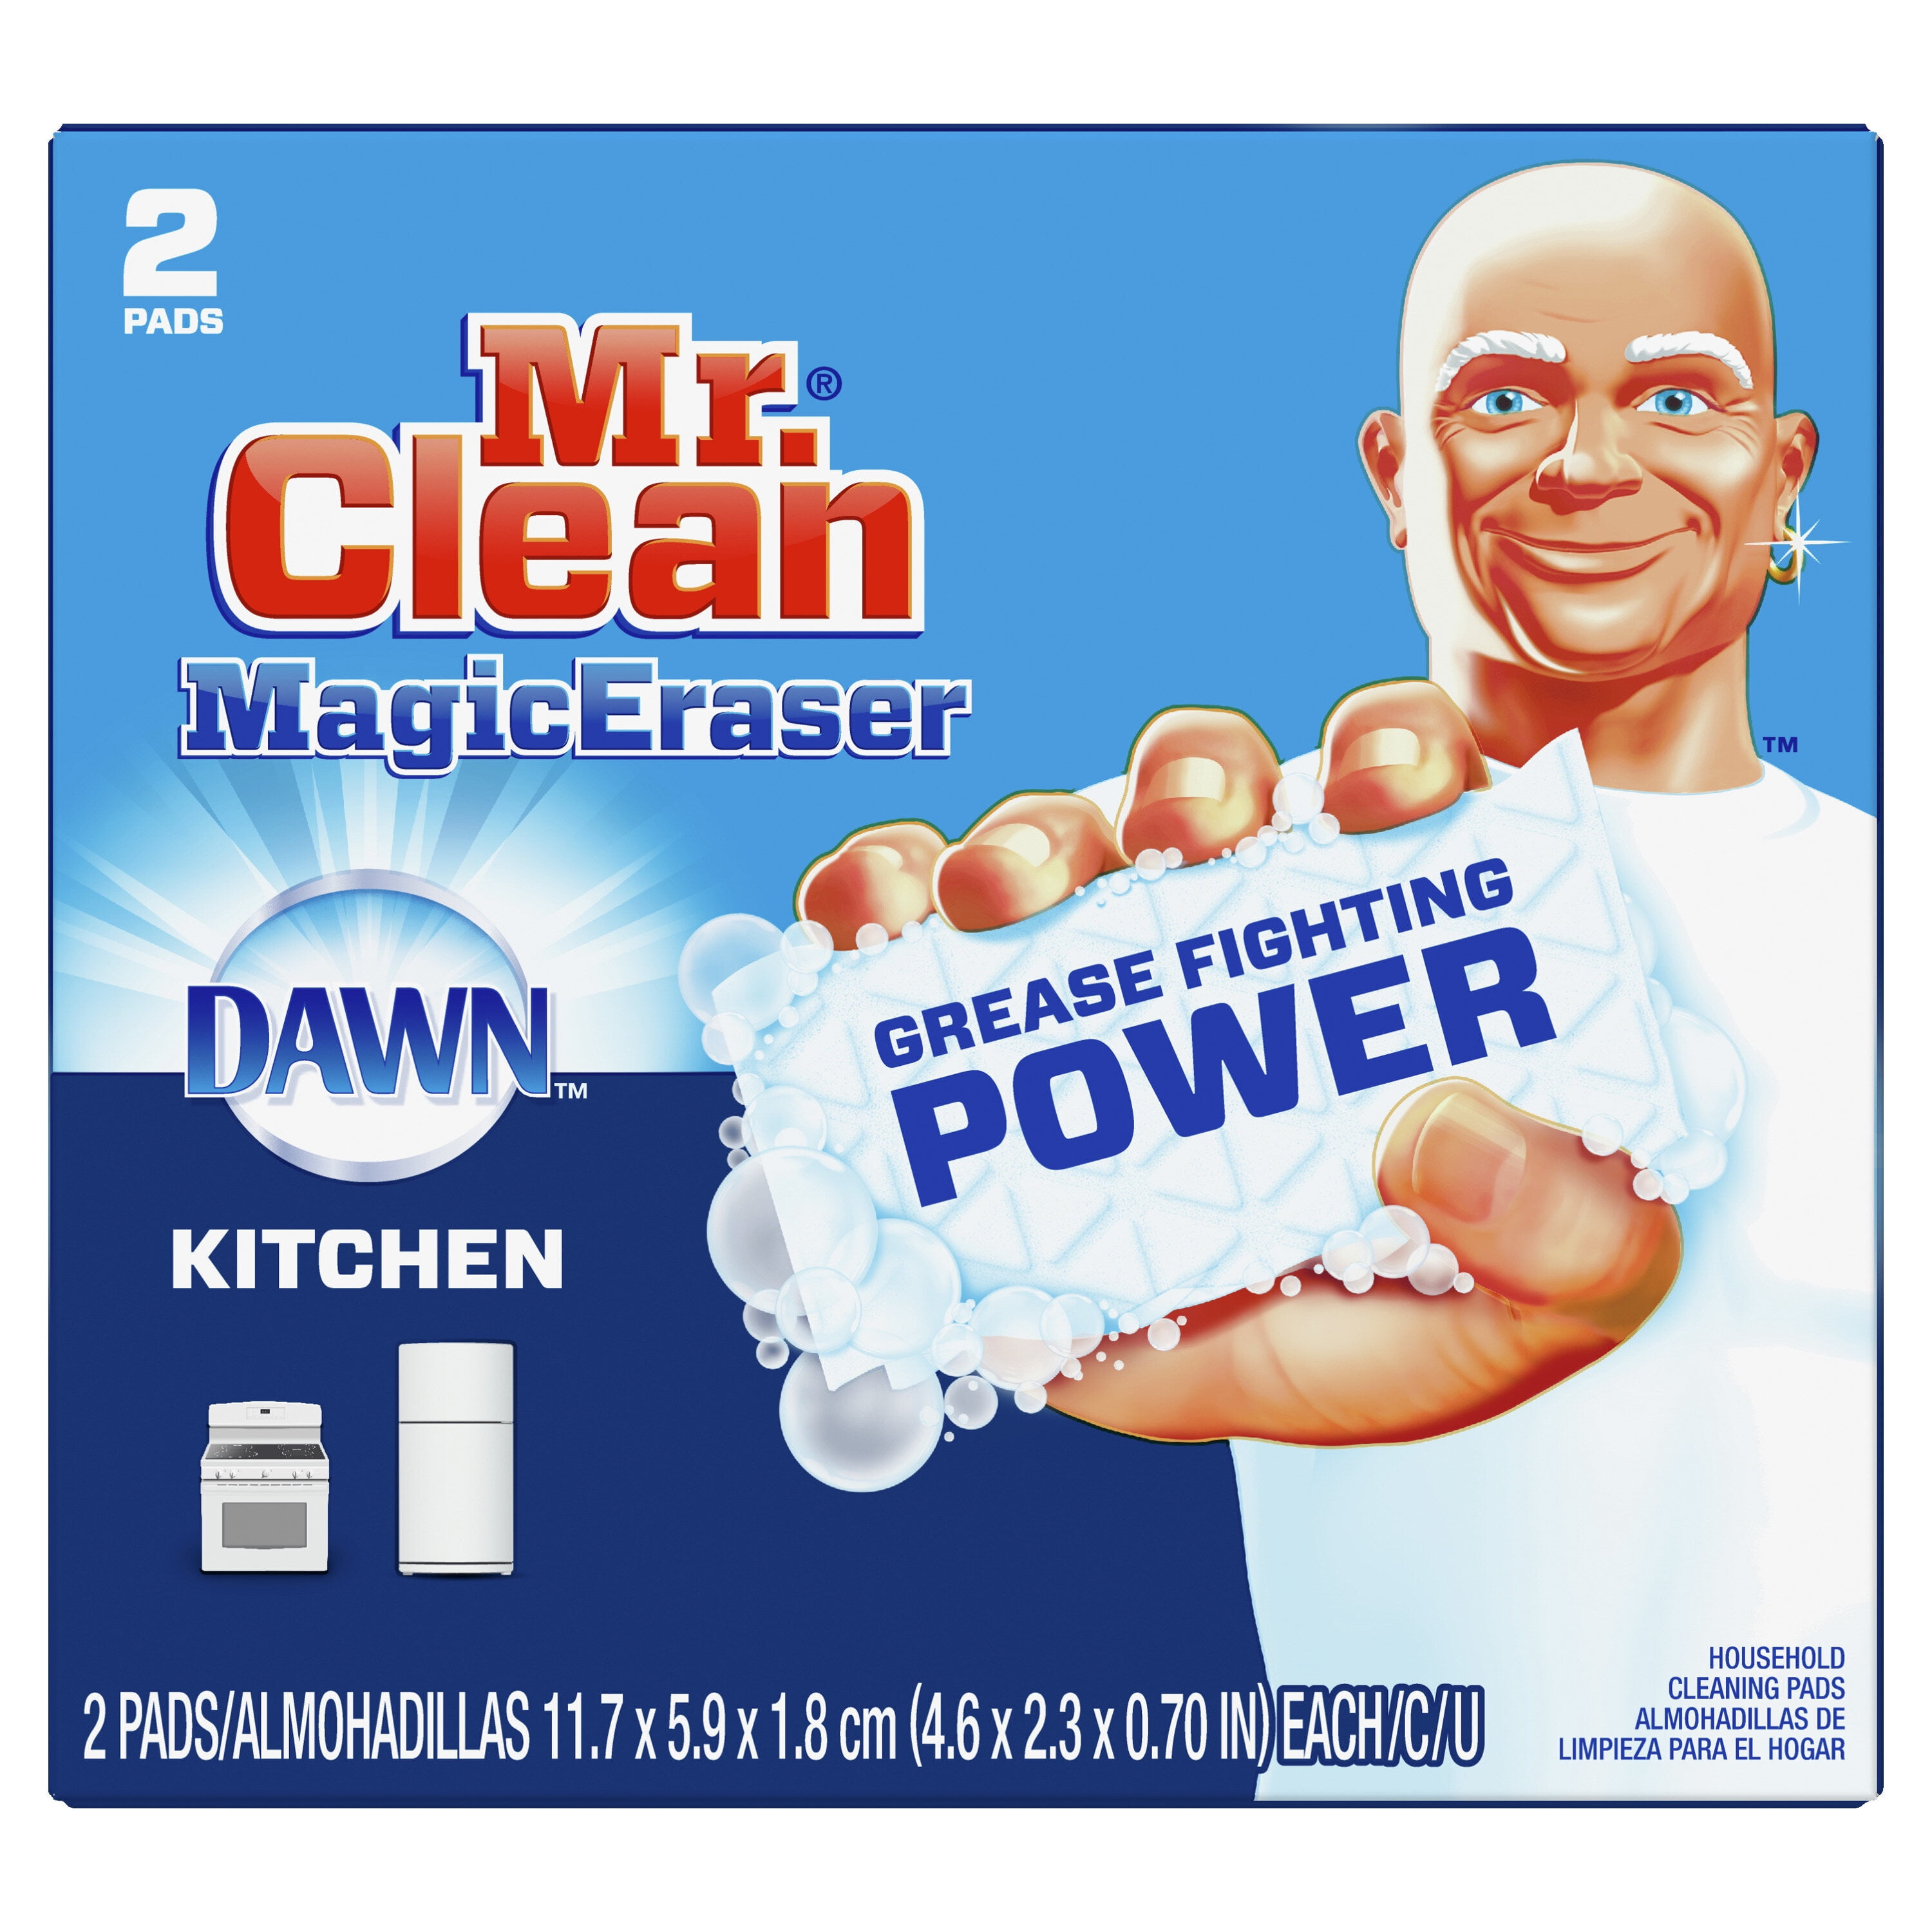 Khăn lau chùi Magic Eraser Kitchen với Dawn của Mr. Clean, bề mặt làm sạch với ... đã trở thành một sản phẩm được yêu thích của nhiều gia đình. Với khả năng làm sạch đặc biệt và phù hợp với bất kỳ bề mặt nào, sản phẩm này sẽ mang đến cho bạn một kết quả tuyệt vời. Nhấn vào hình ảnh để khám phá sức mạnh của khăn lau chùi Magic Eraser.